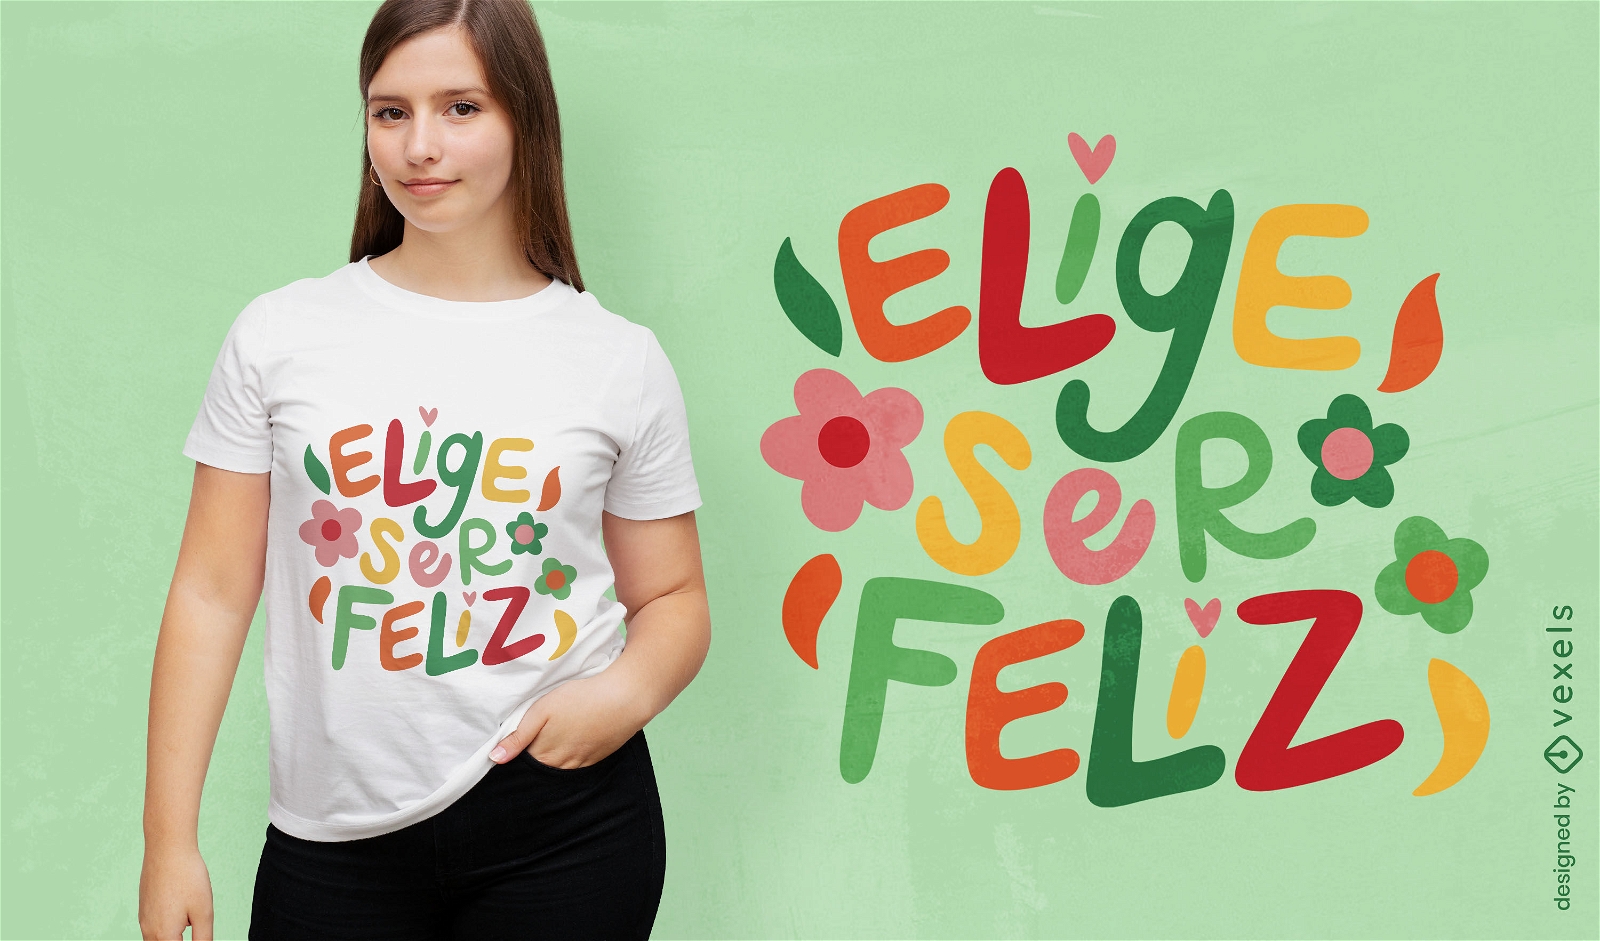 W?hlen Sie ein spanisches Zitat-T-Shirt-Design f?r Gl?ck